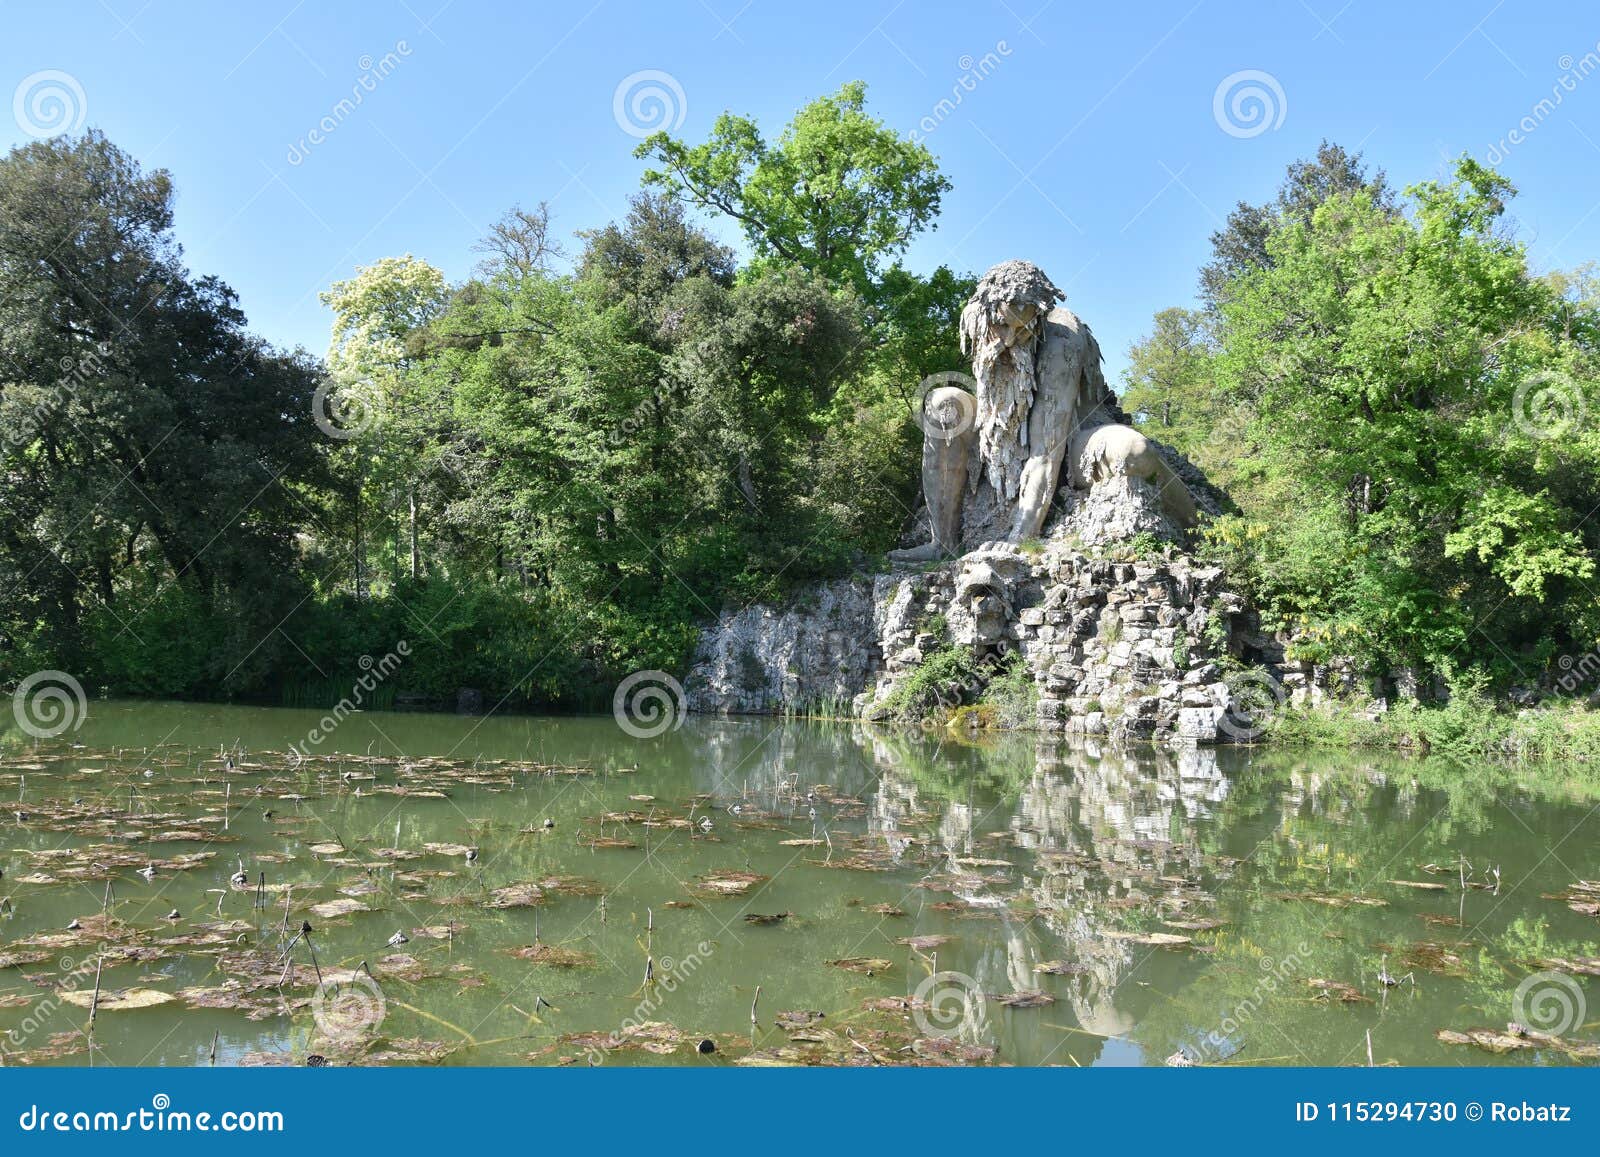 the colosso dell`appennino del giambologna 1580, sculpture located in florence in the public park of villa demidoff